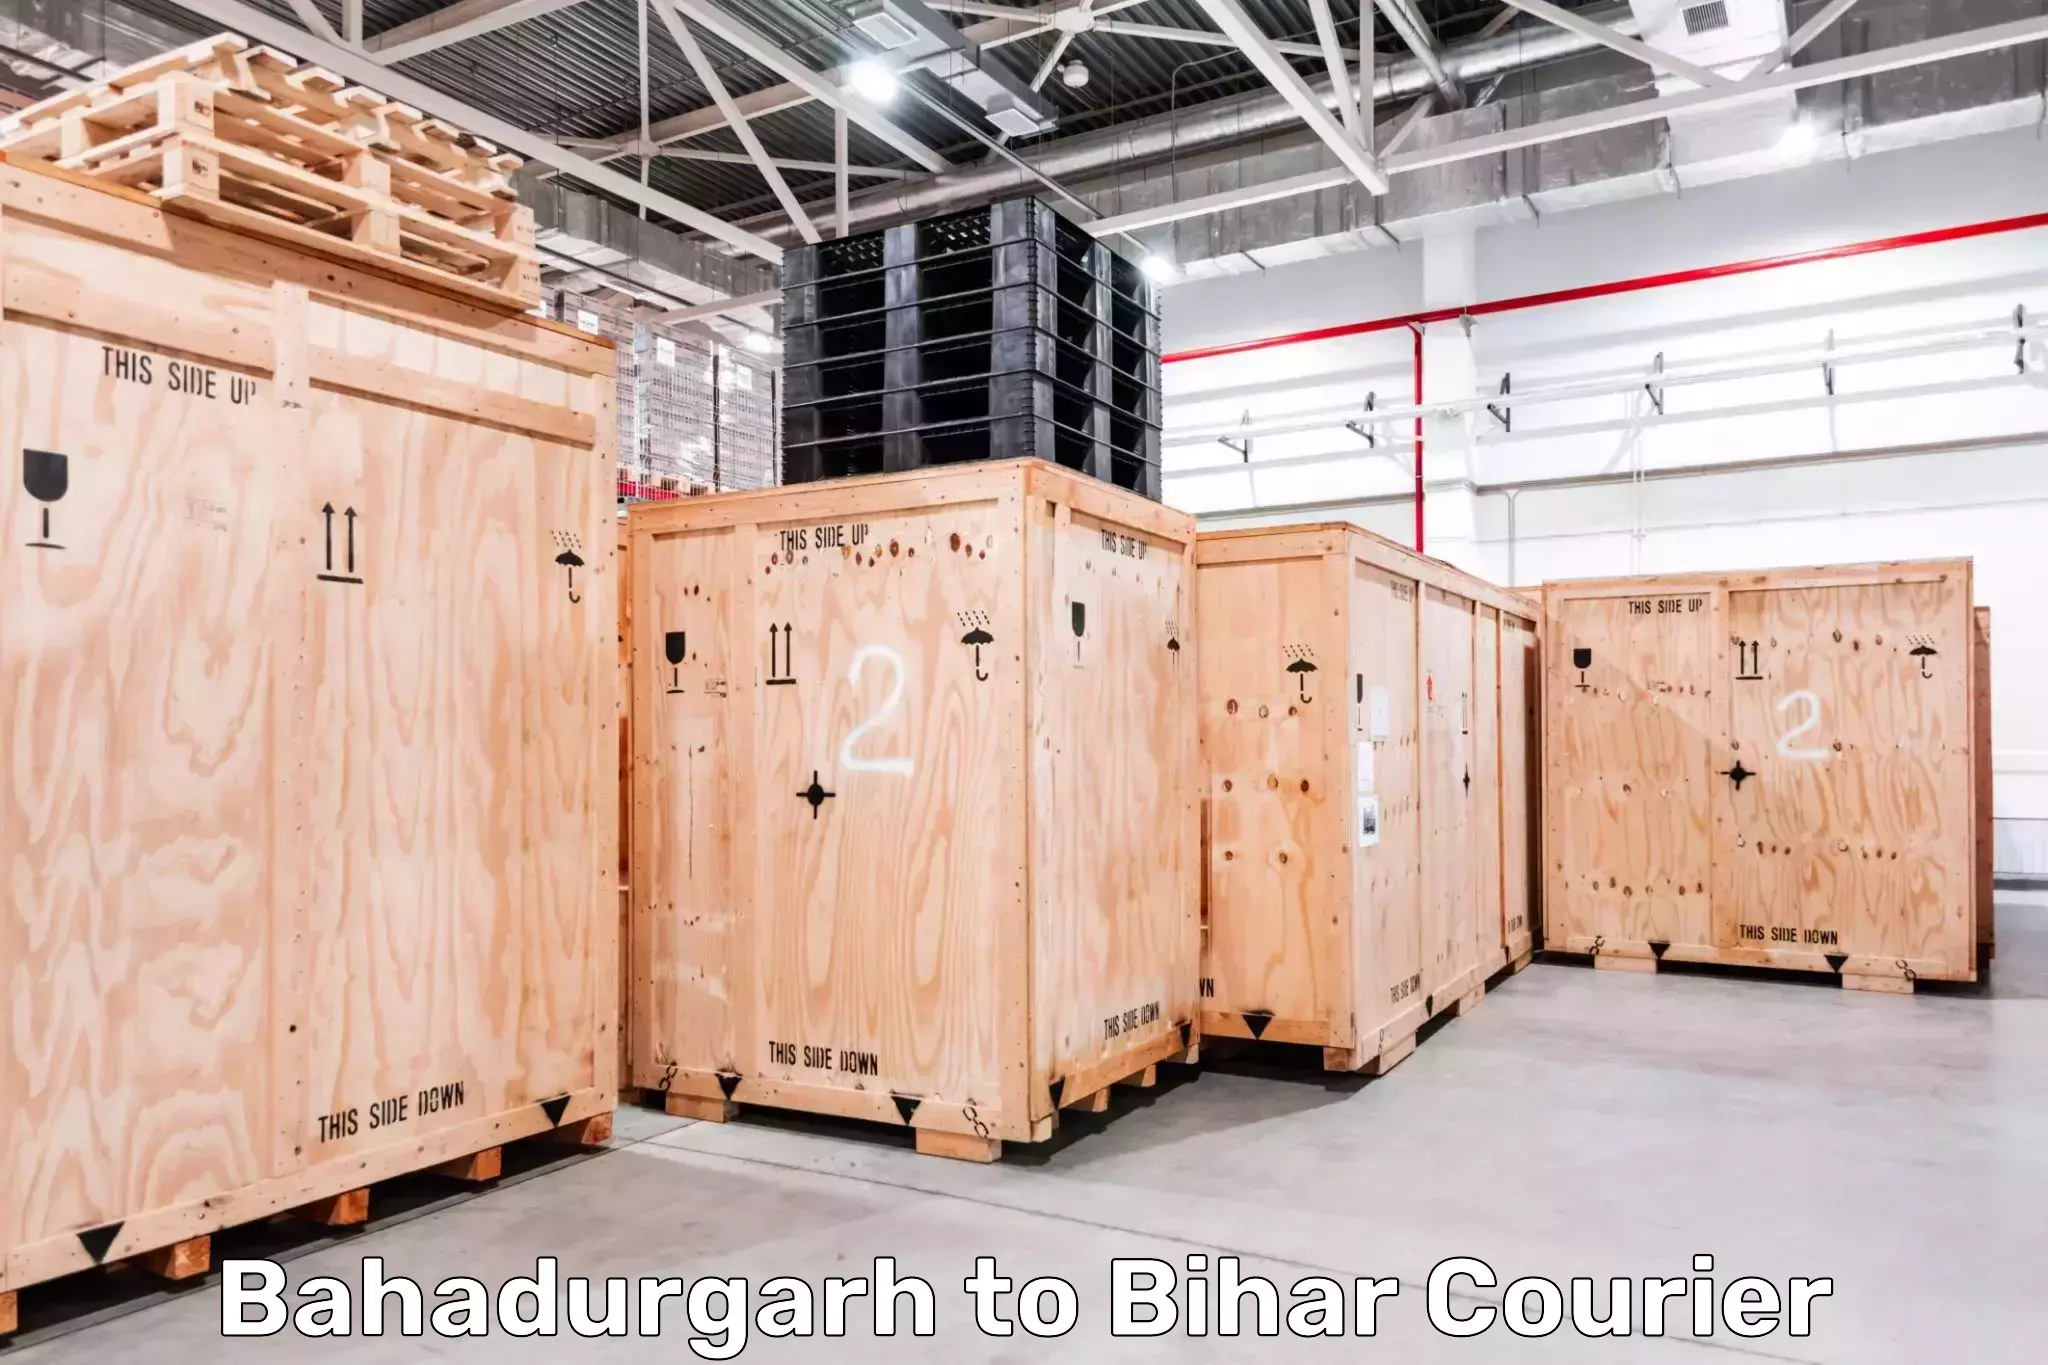 Tech-enabled shipping Bahadurgarh to Fatwah